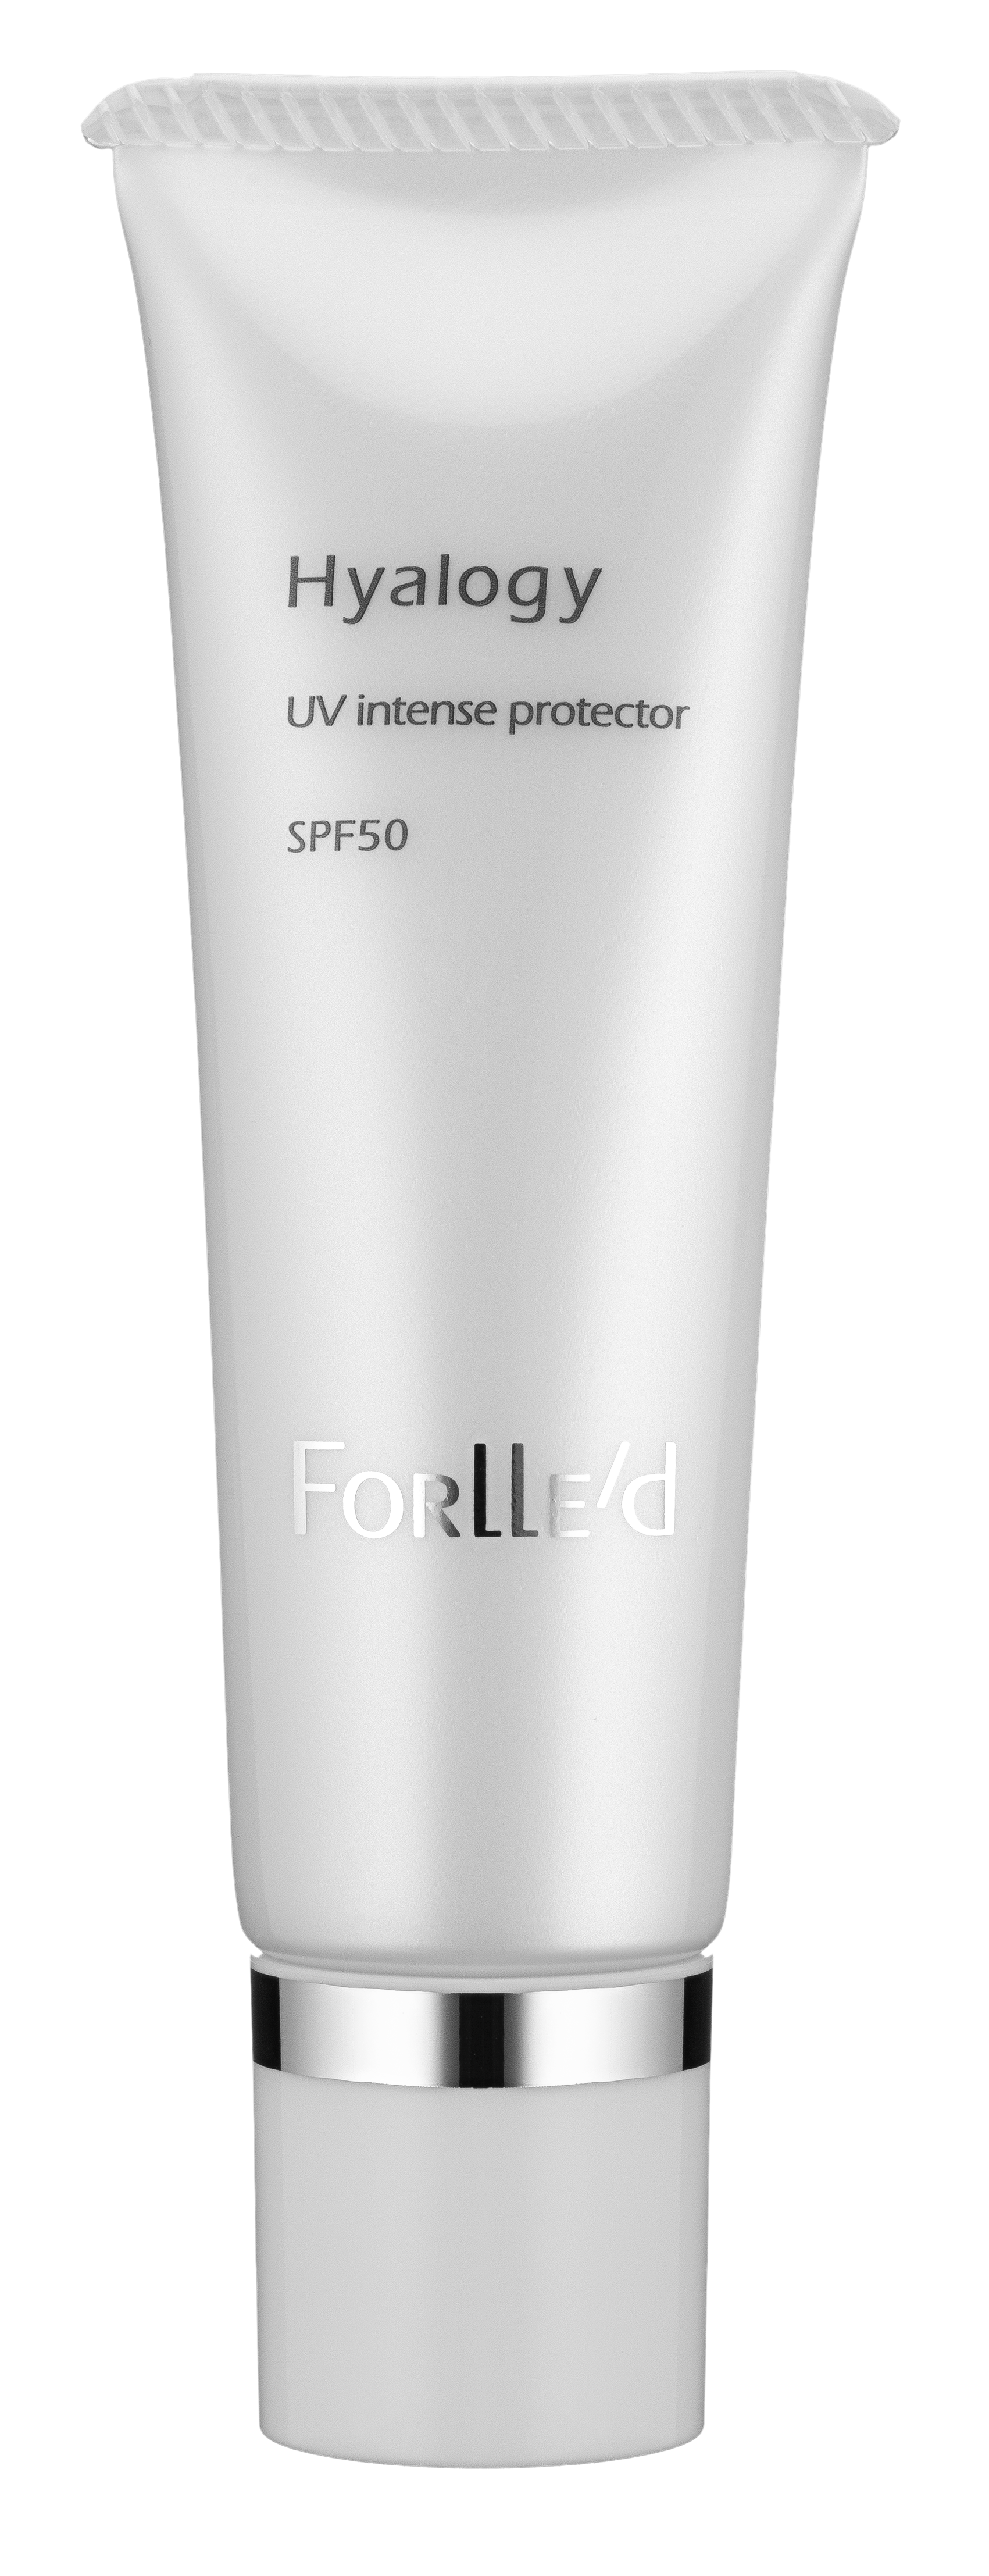 Forlle'd Hyalogy UV intense protector SPF50 (30ml)